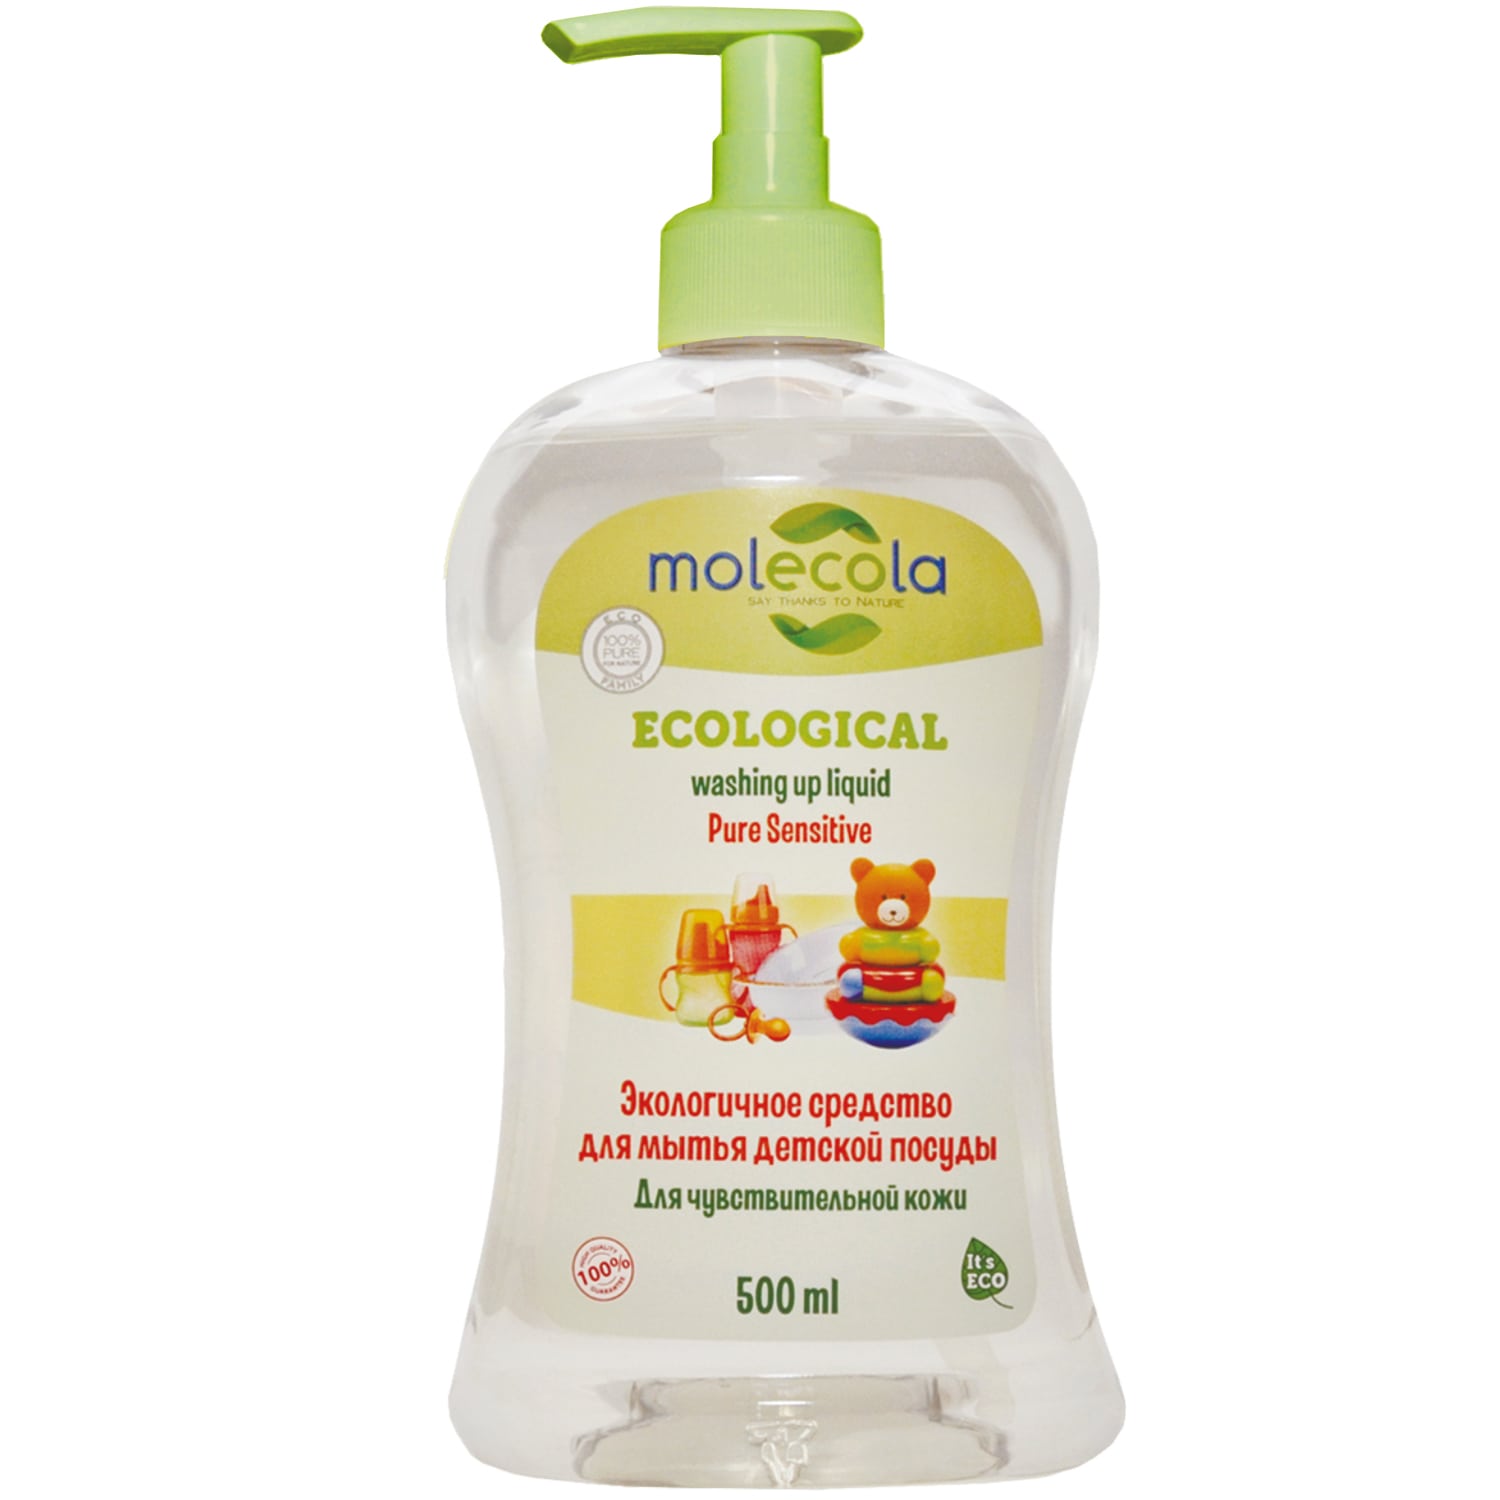 Molecola Средство для мытья детской посуды для чувствительной кожи, экологическое, 500 мл (Molecola, Детская серия) средство экологичное для мытья детской посуды molecola для чувствительной кожи 500 мл